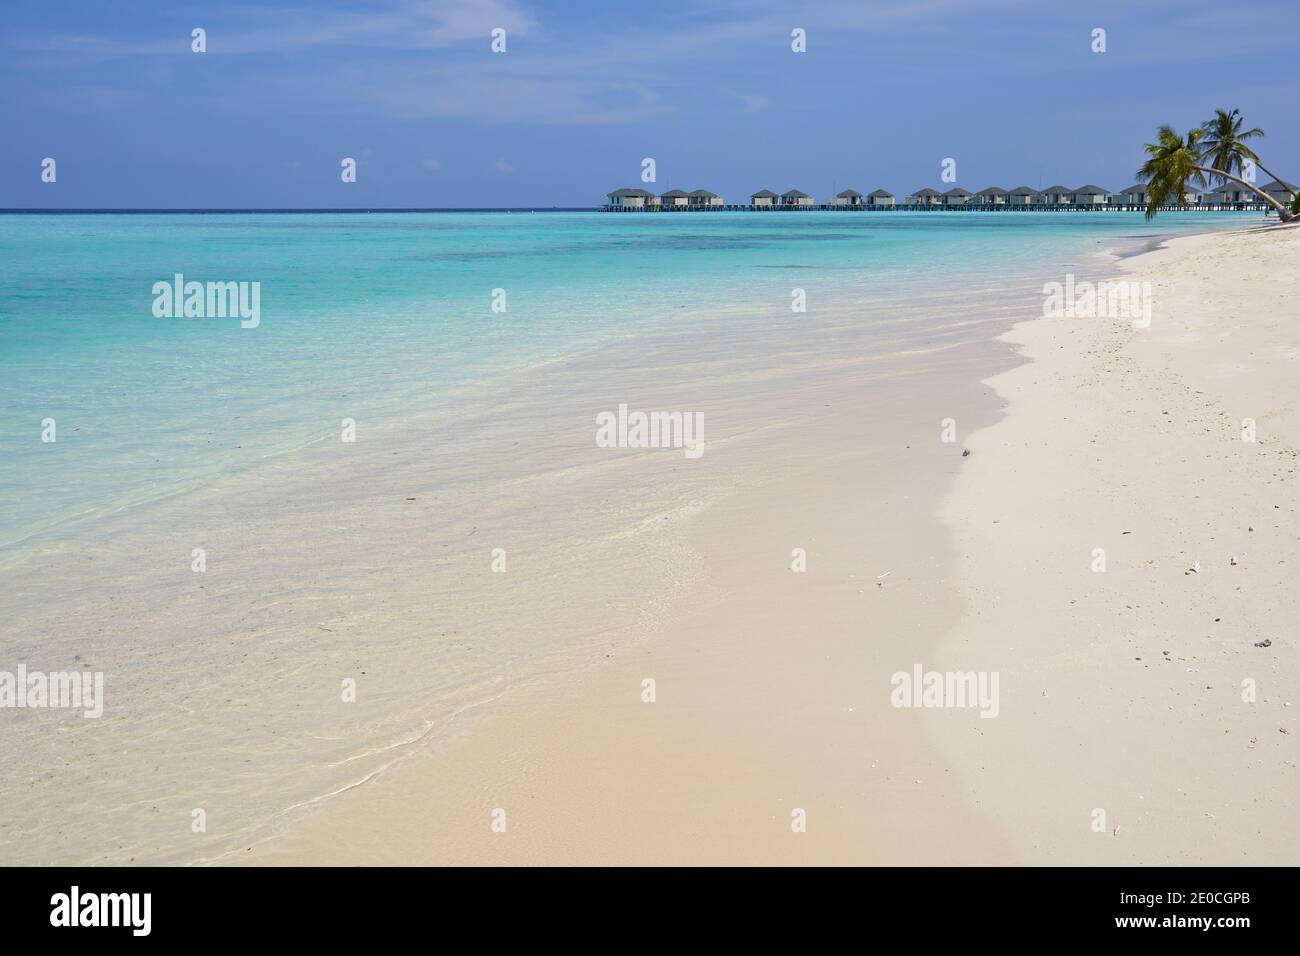 Une plage tropicale, sur l'île de Havodda, dans l'atoll de Gaafu Dhaalu, à l'extrême sud des Maldives, Océan Indien, Asie Banque D'Images